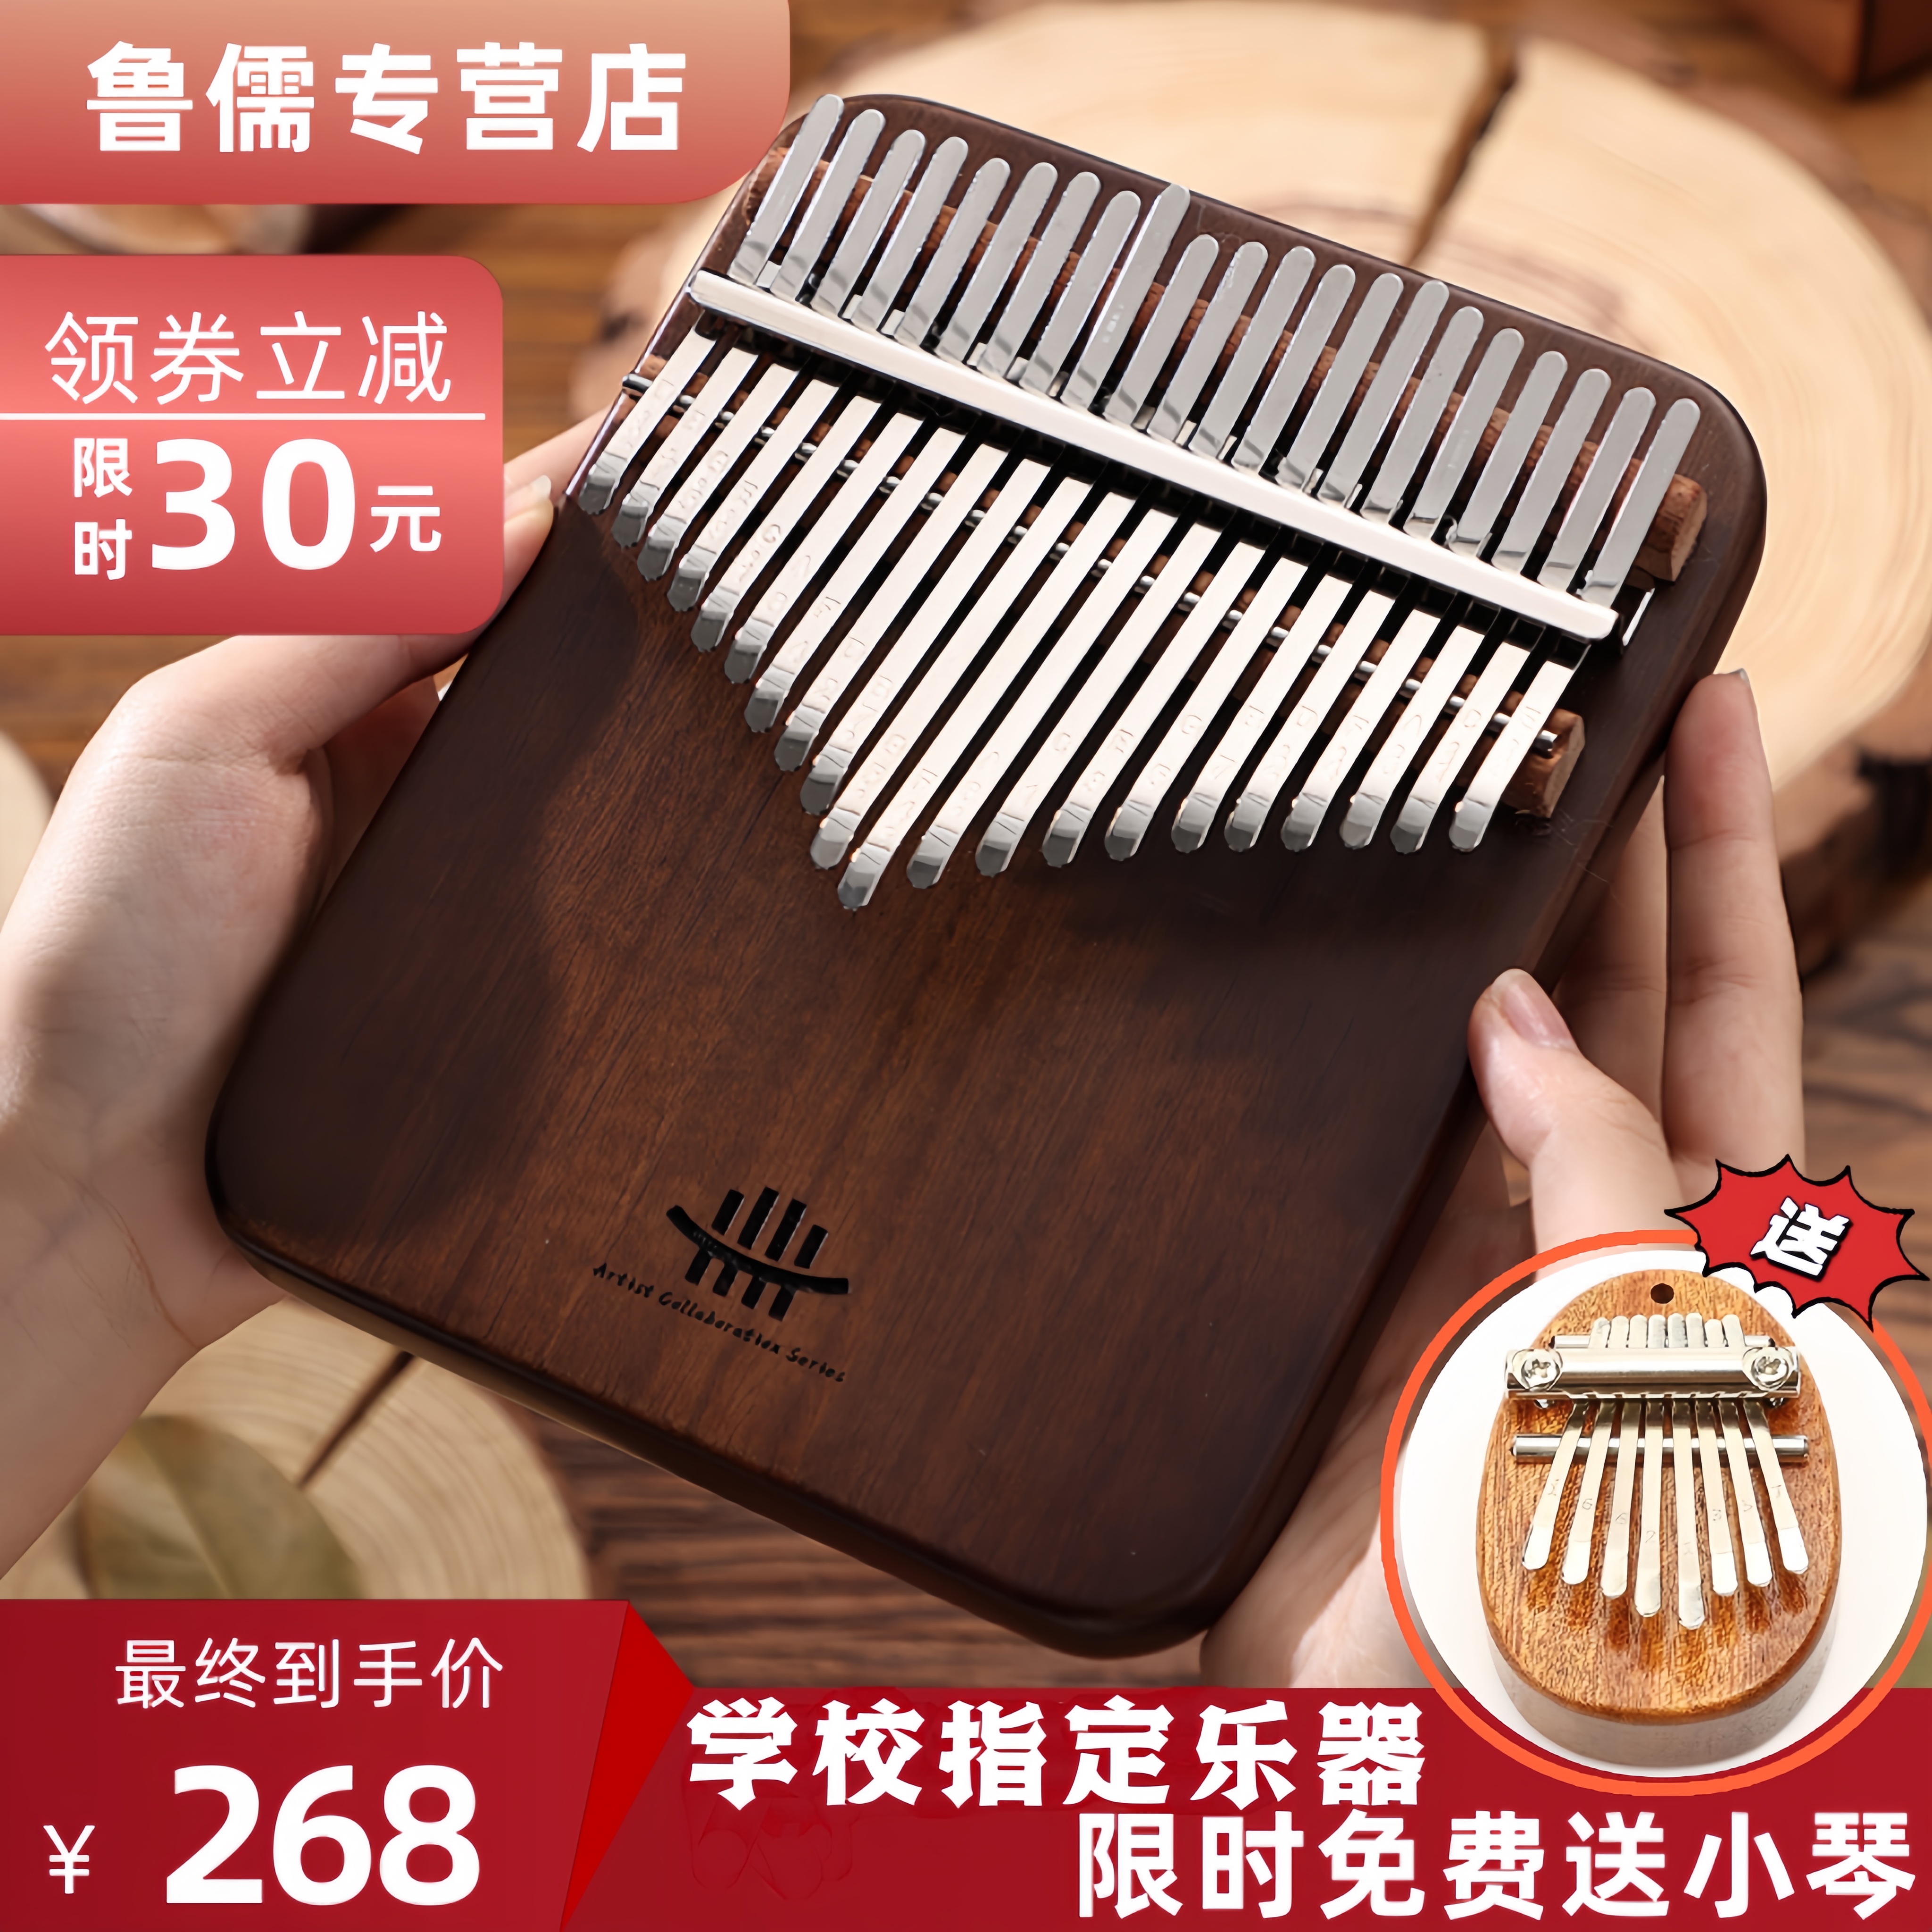 天猫【专业演奏级】鲁儒A类板式黑胡桃木拇指琴卡林巴21音乐器